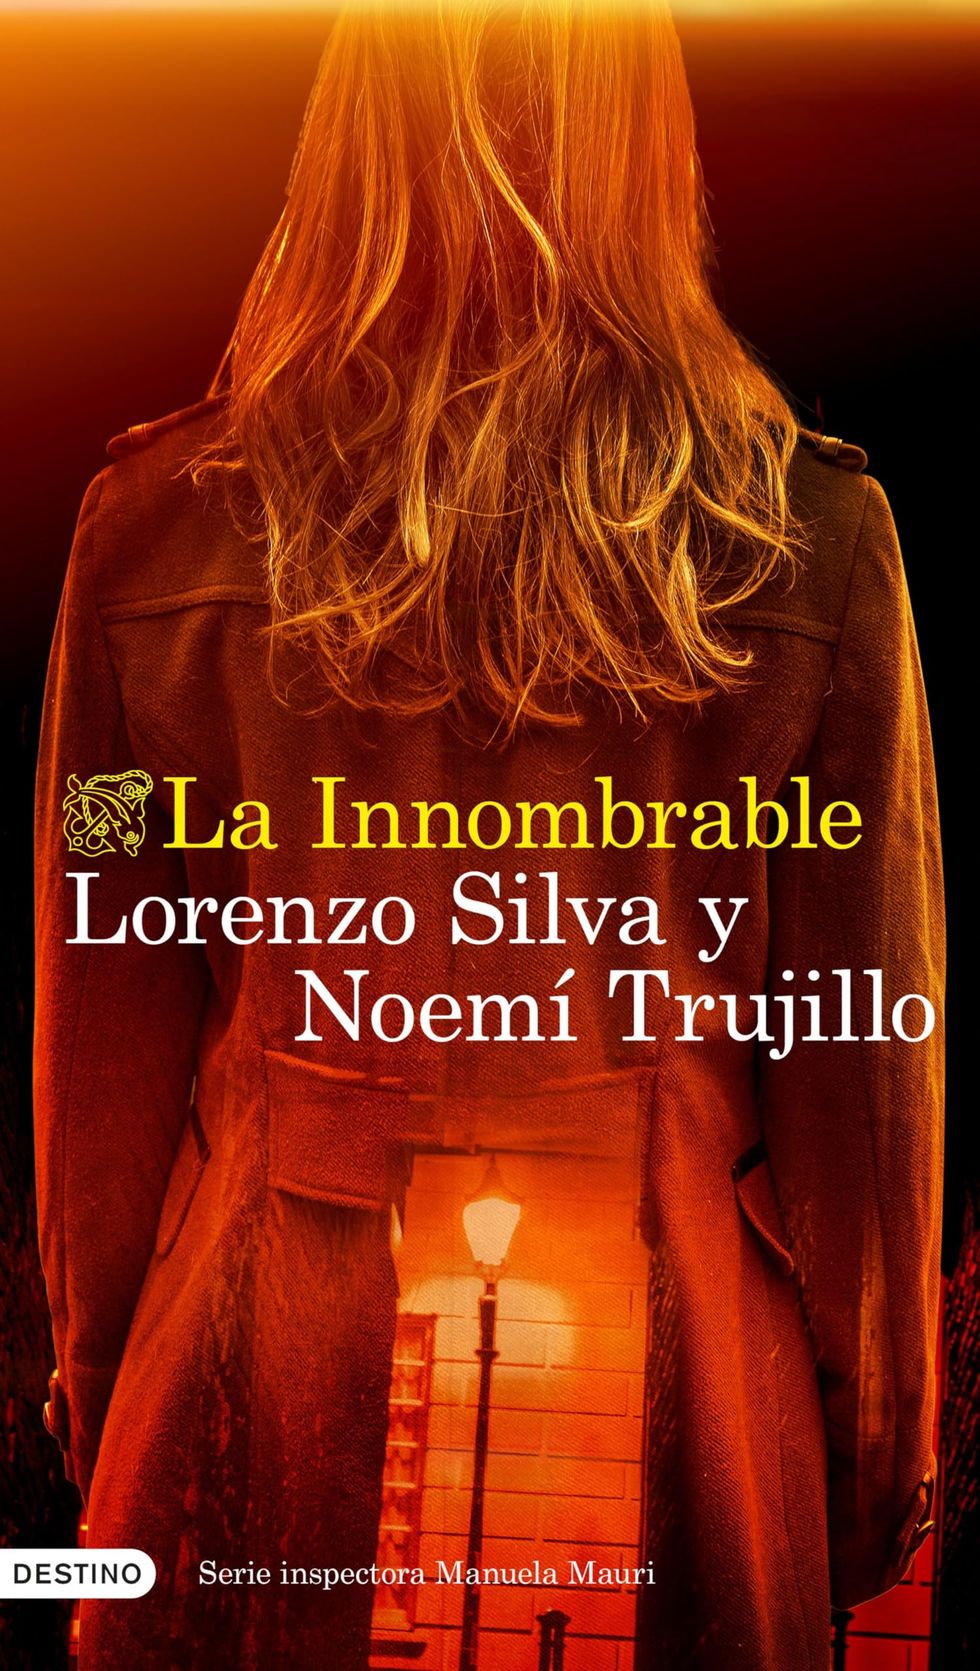 'La Innombrable' de Lorenzo Silva y Noemí Trujillo [22 de mayo]